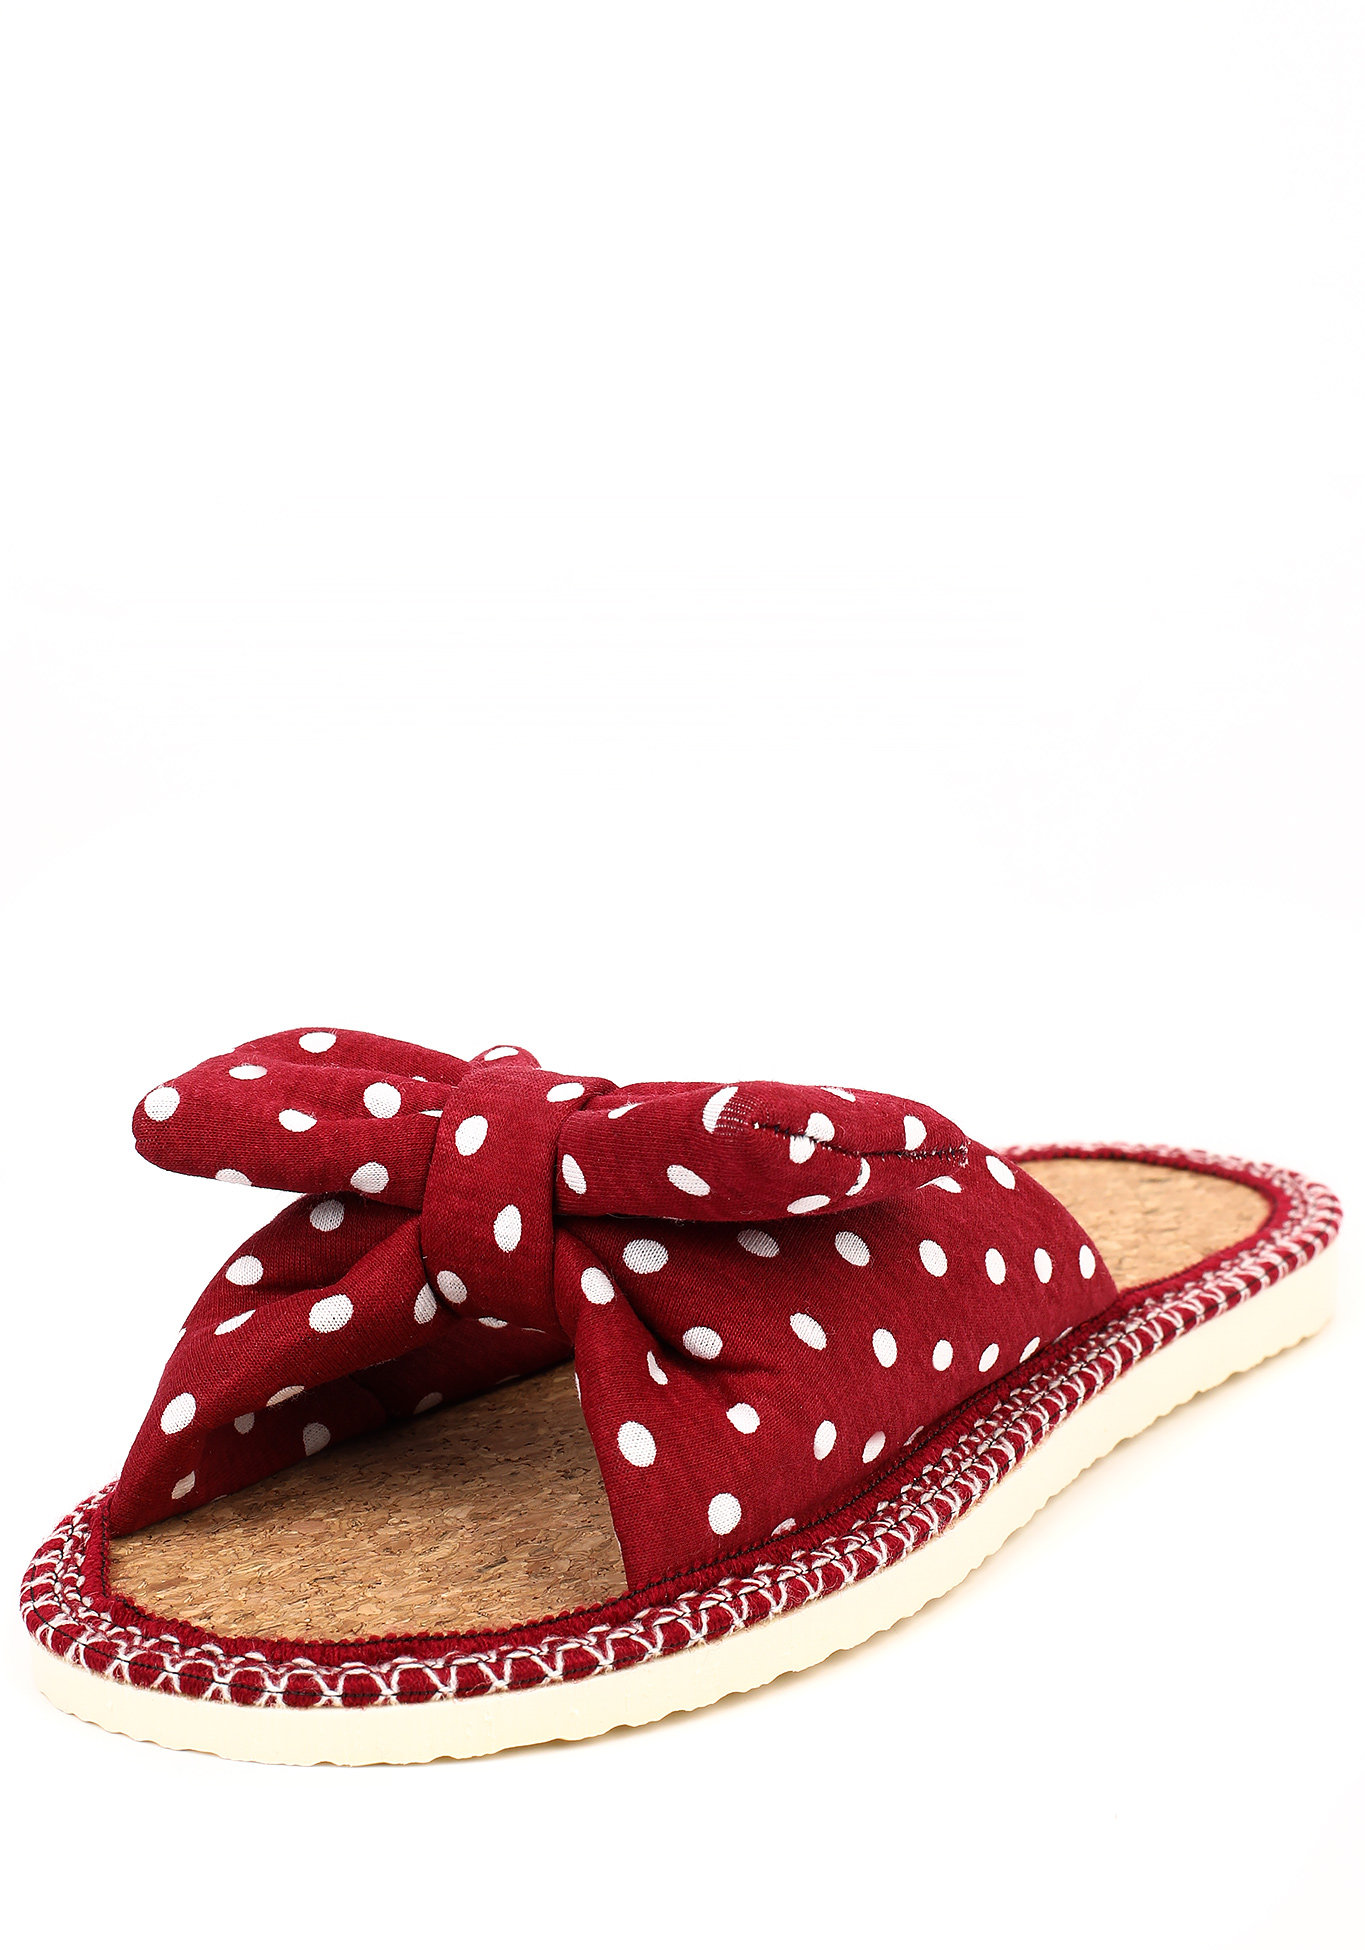 Тапочки женские "Модный горошек", цвет красный, размер 36 - фото 1